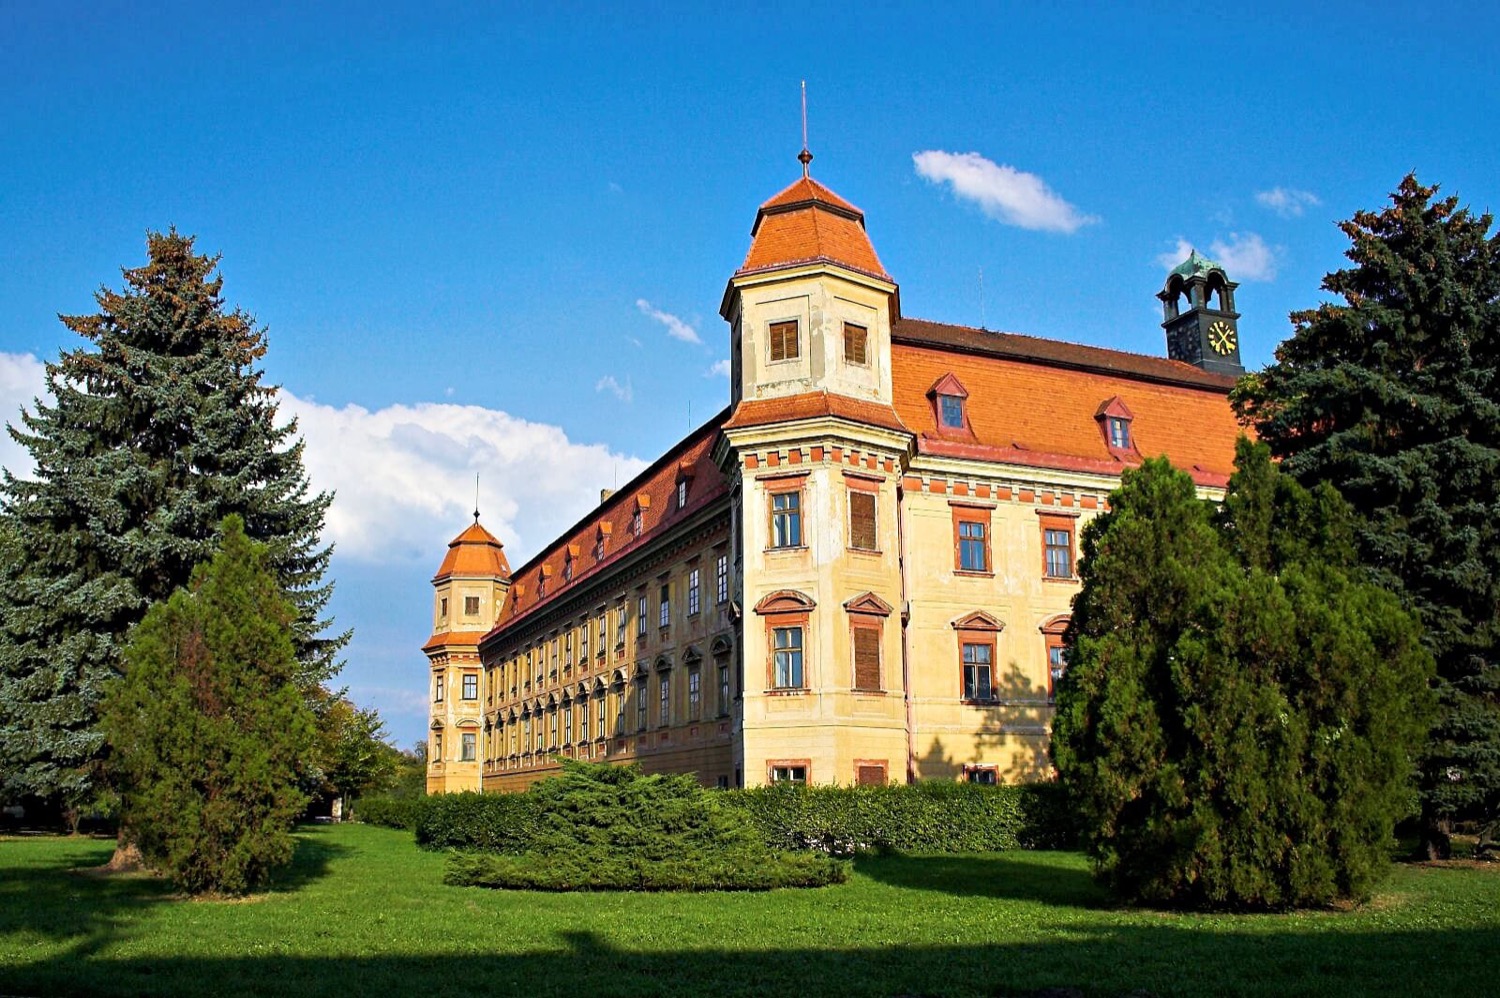 Holešov Chateau